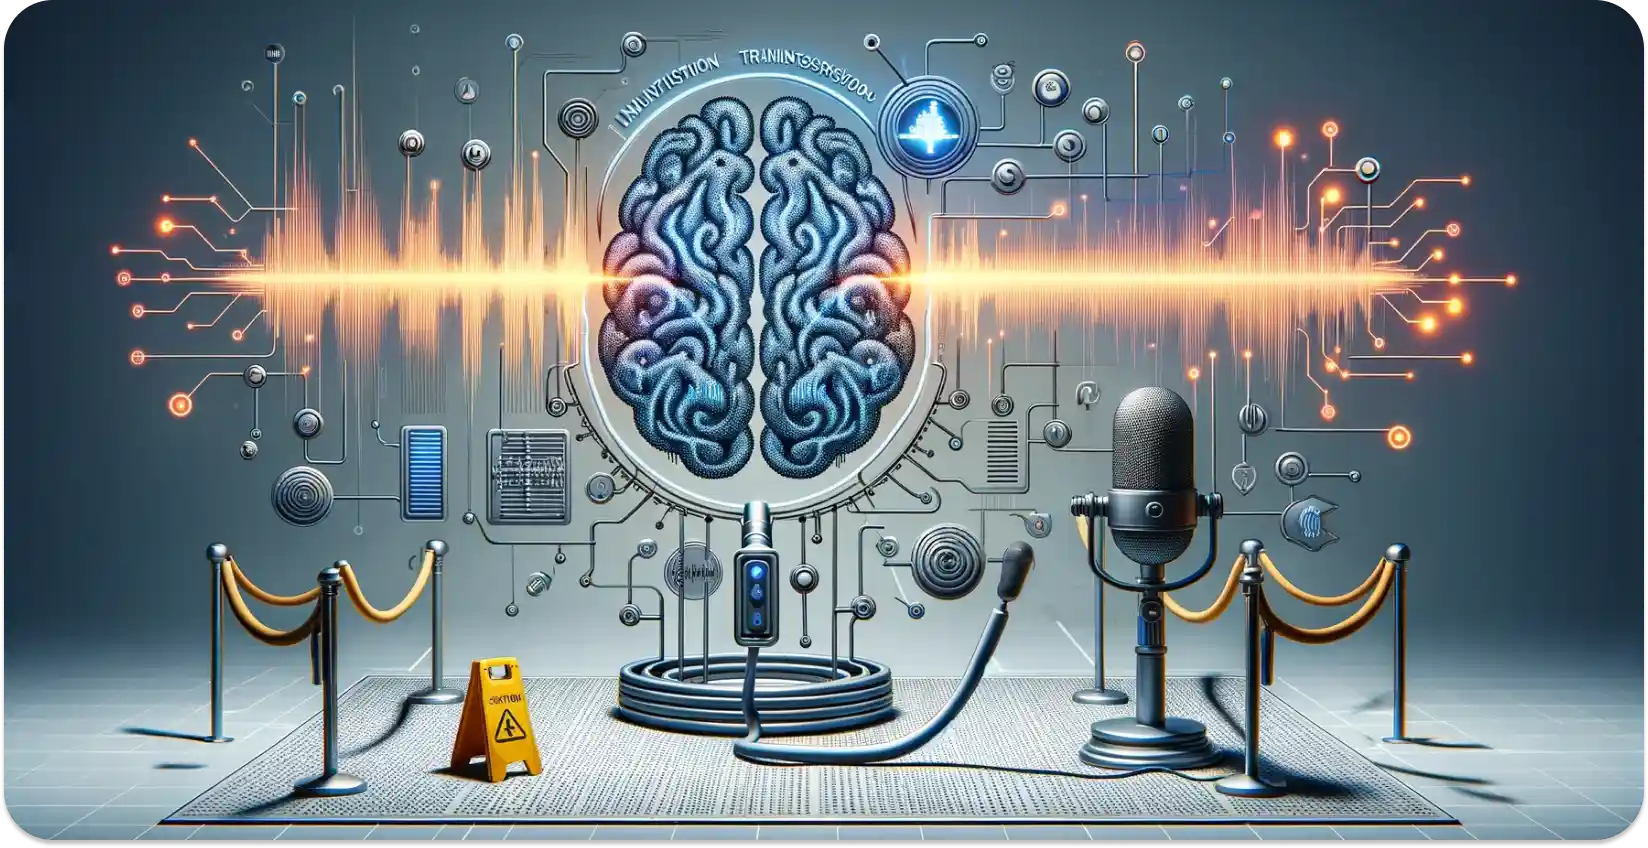 Arte conceitual de um cérebro AI processar ondas sonoras em dados, simbolizando a transcrição de áudio.